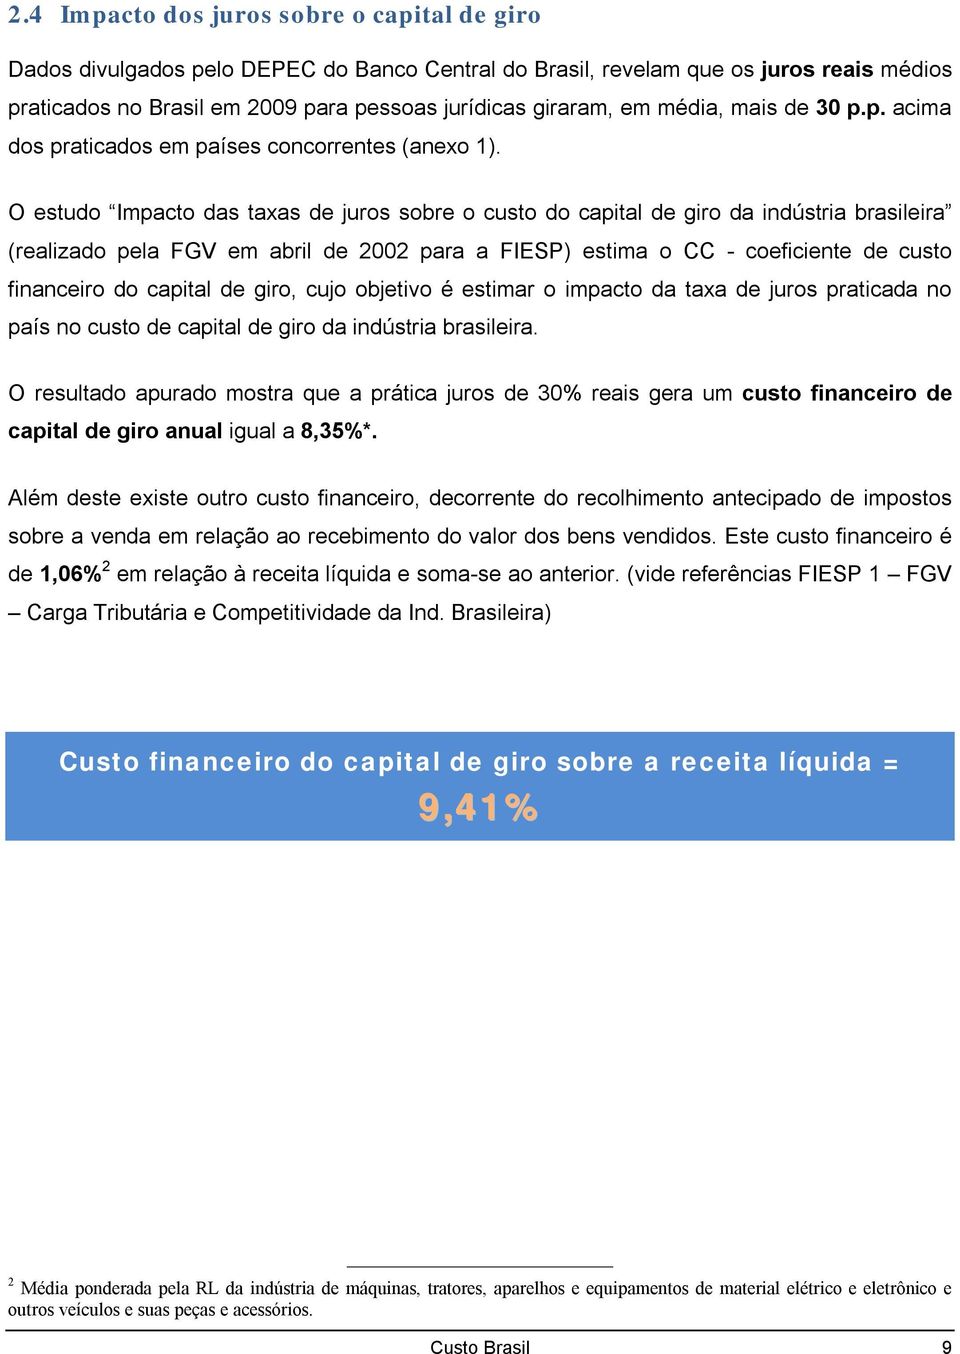 O estudo Impacto das taxas de juros sobre o custo do capital de giro da indústria brasileira (realizado pela FGV em abril de 2002 para a FIESP) estima o CC - coeficiente de custo financeiro do